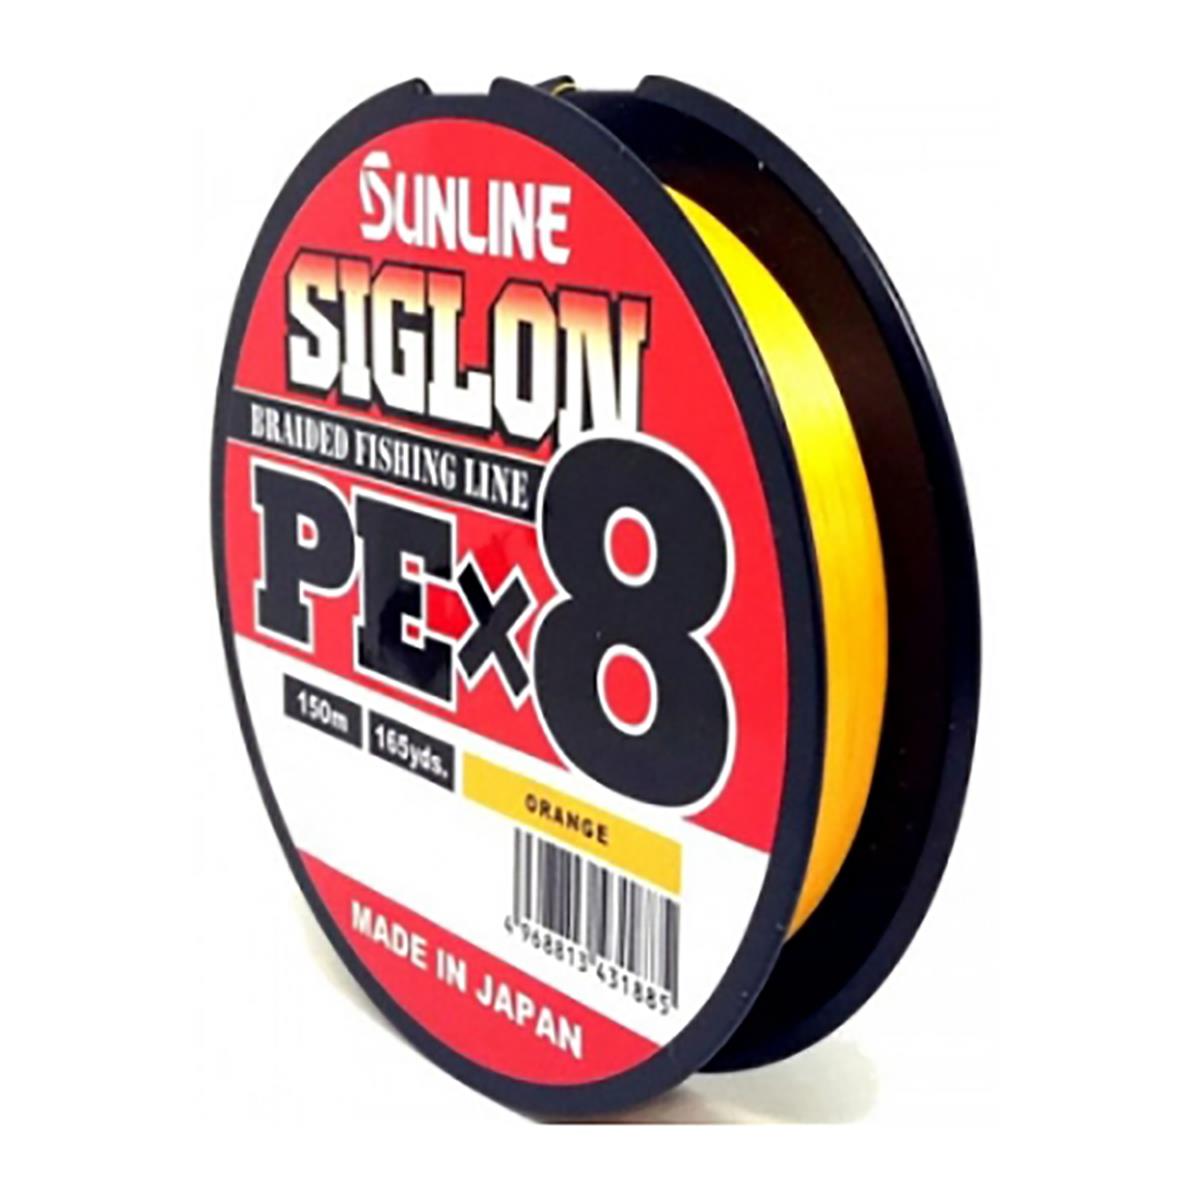 Шнур SIGLON PE×8 150M (Orange) #3/50LB Sunline шнур для вязания 100% полиэфир 1мм 200м 75±10гр 09 кофе